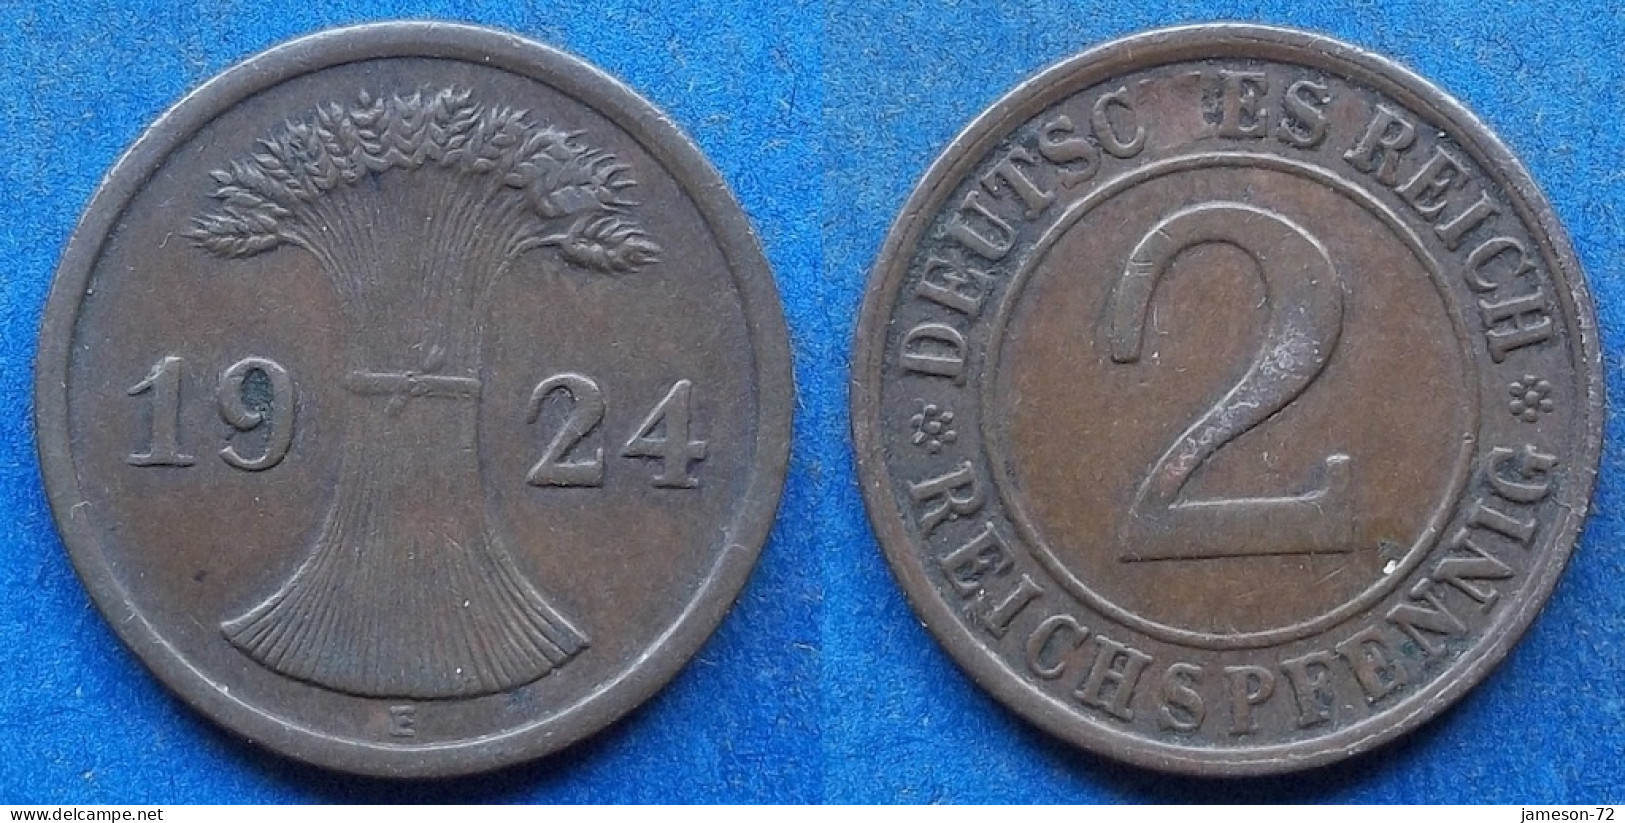 GERMANY - 2 Reichspfennig 1924 E KM# 38 Weimar Republic Reichsmark Coinage (1924-1938) - Edelweiss Coins - 2 Rentenpfennig & 2 Reichspfennig